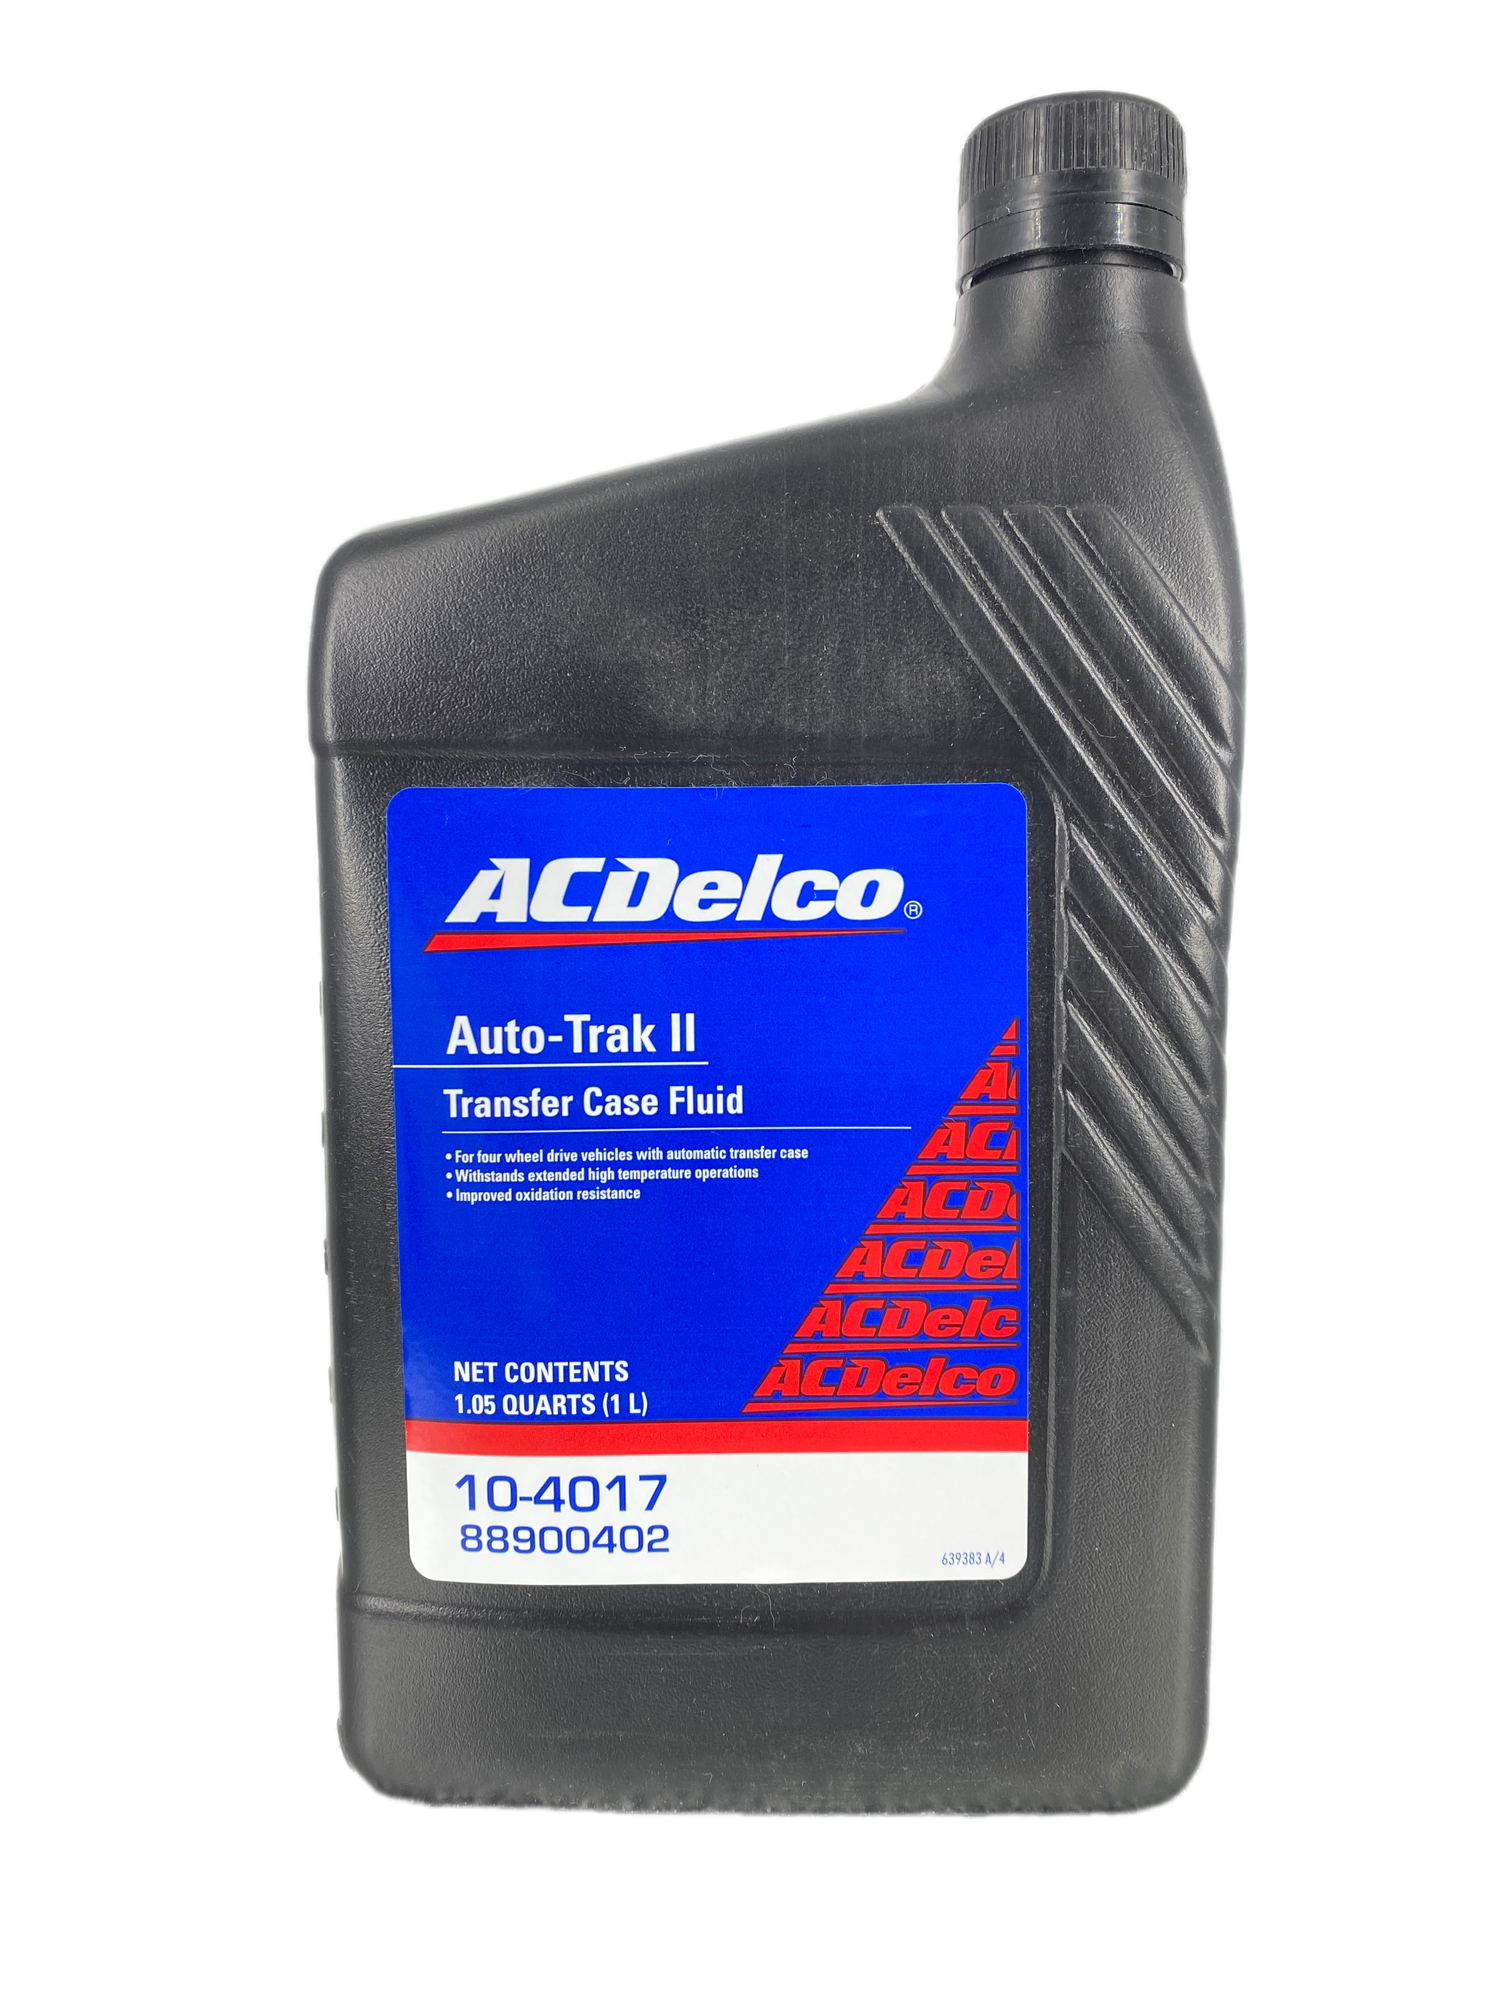 Масло трансмиссионное ACDELCO Auto-Trak II Transfer Case Fluid (1л) Арт. 10-4017 для раздаточных коробок, работающих при высоких нагрузках